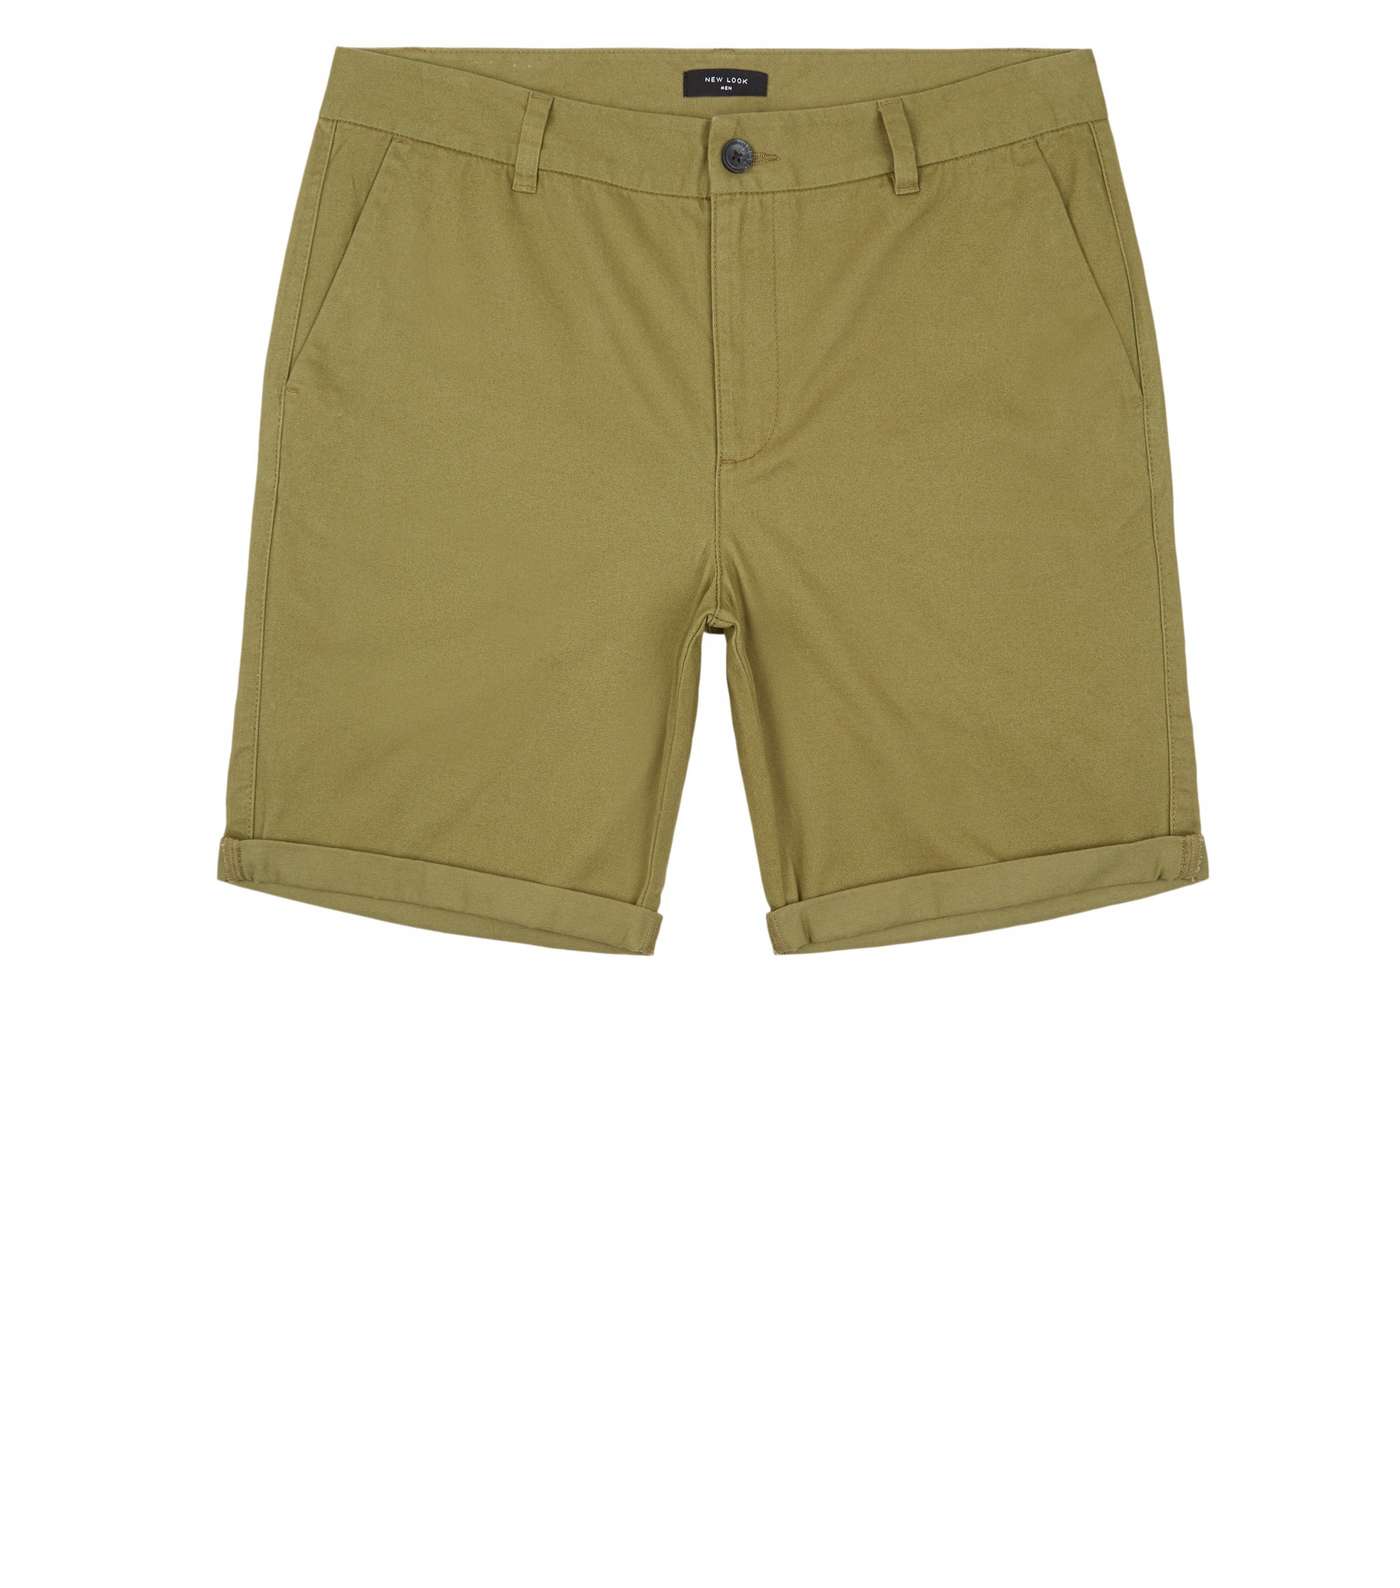 Olive Chino Cotton Shorts Image 4